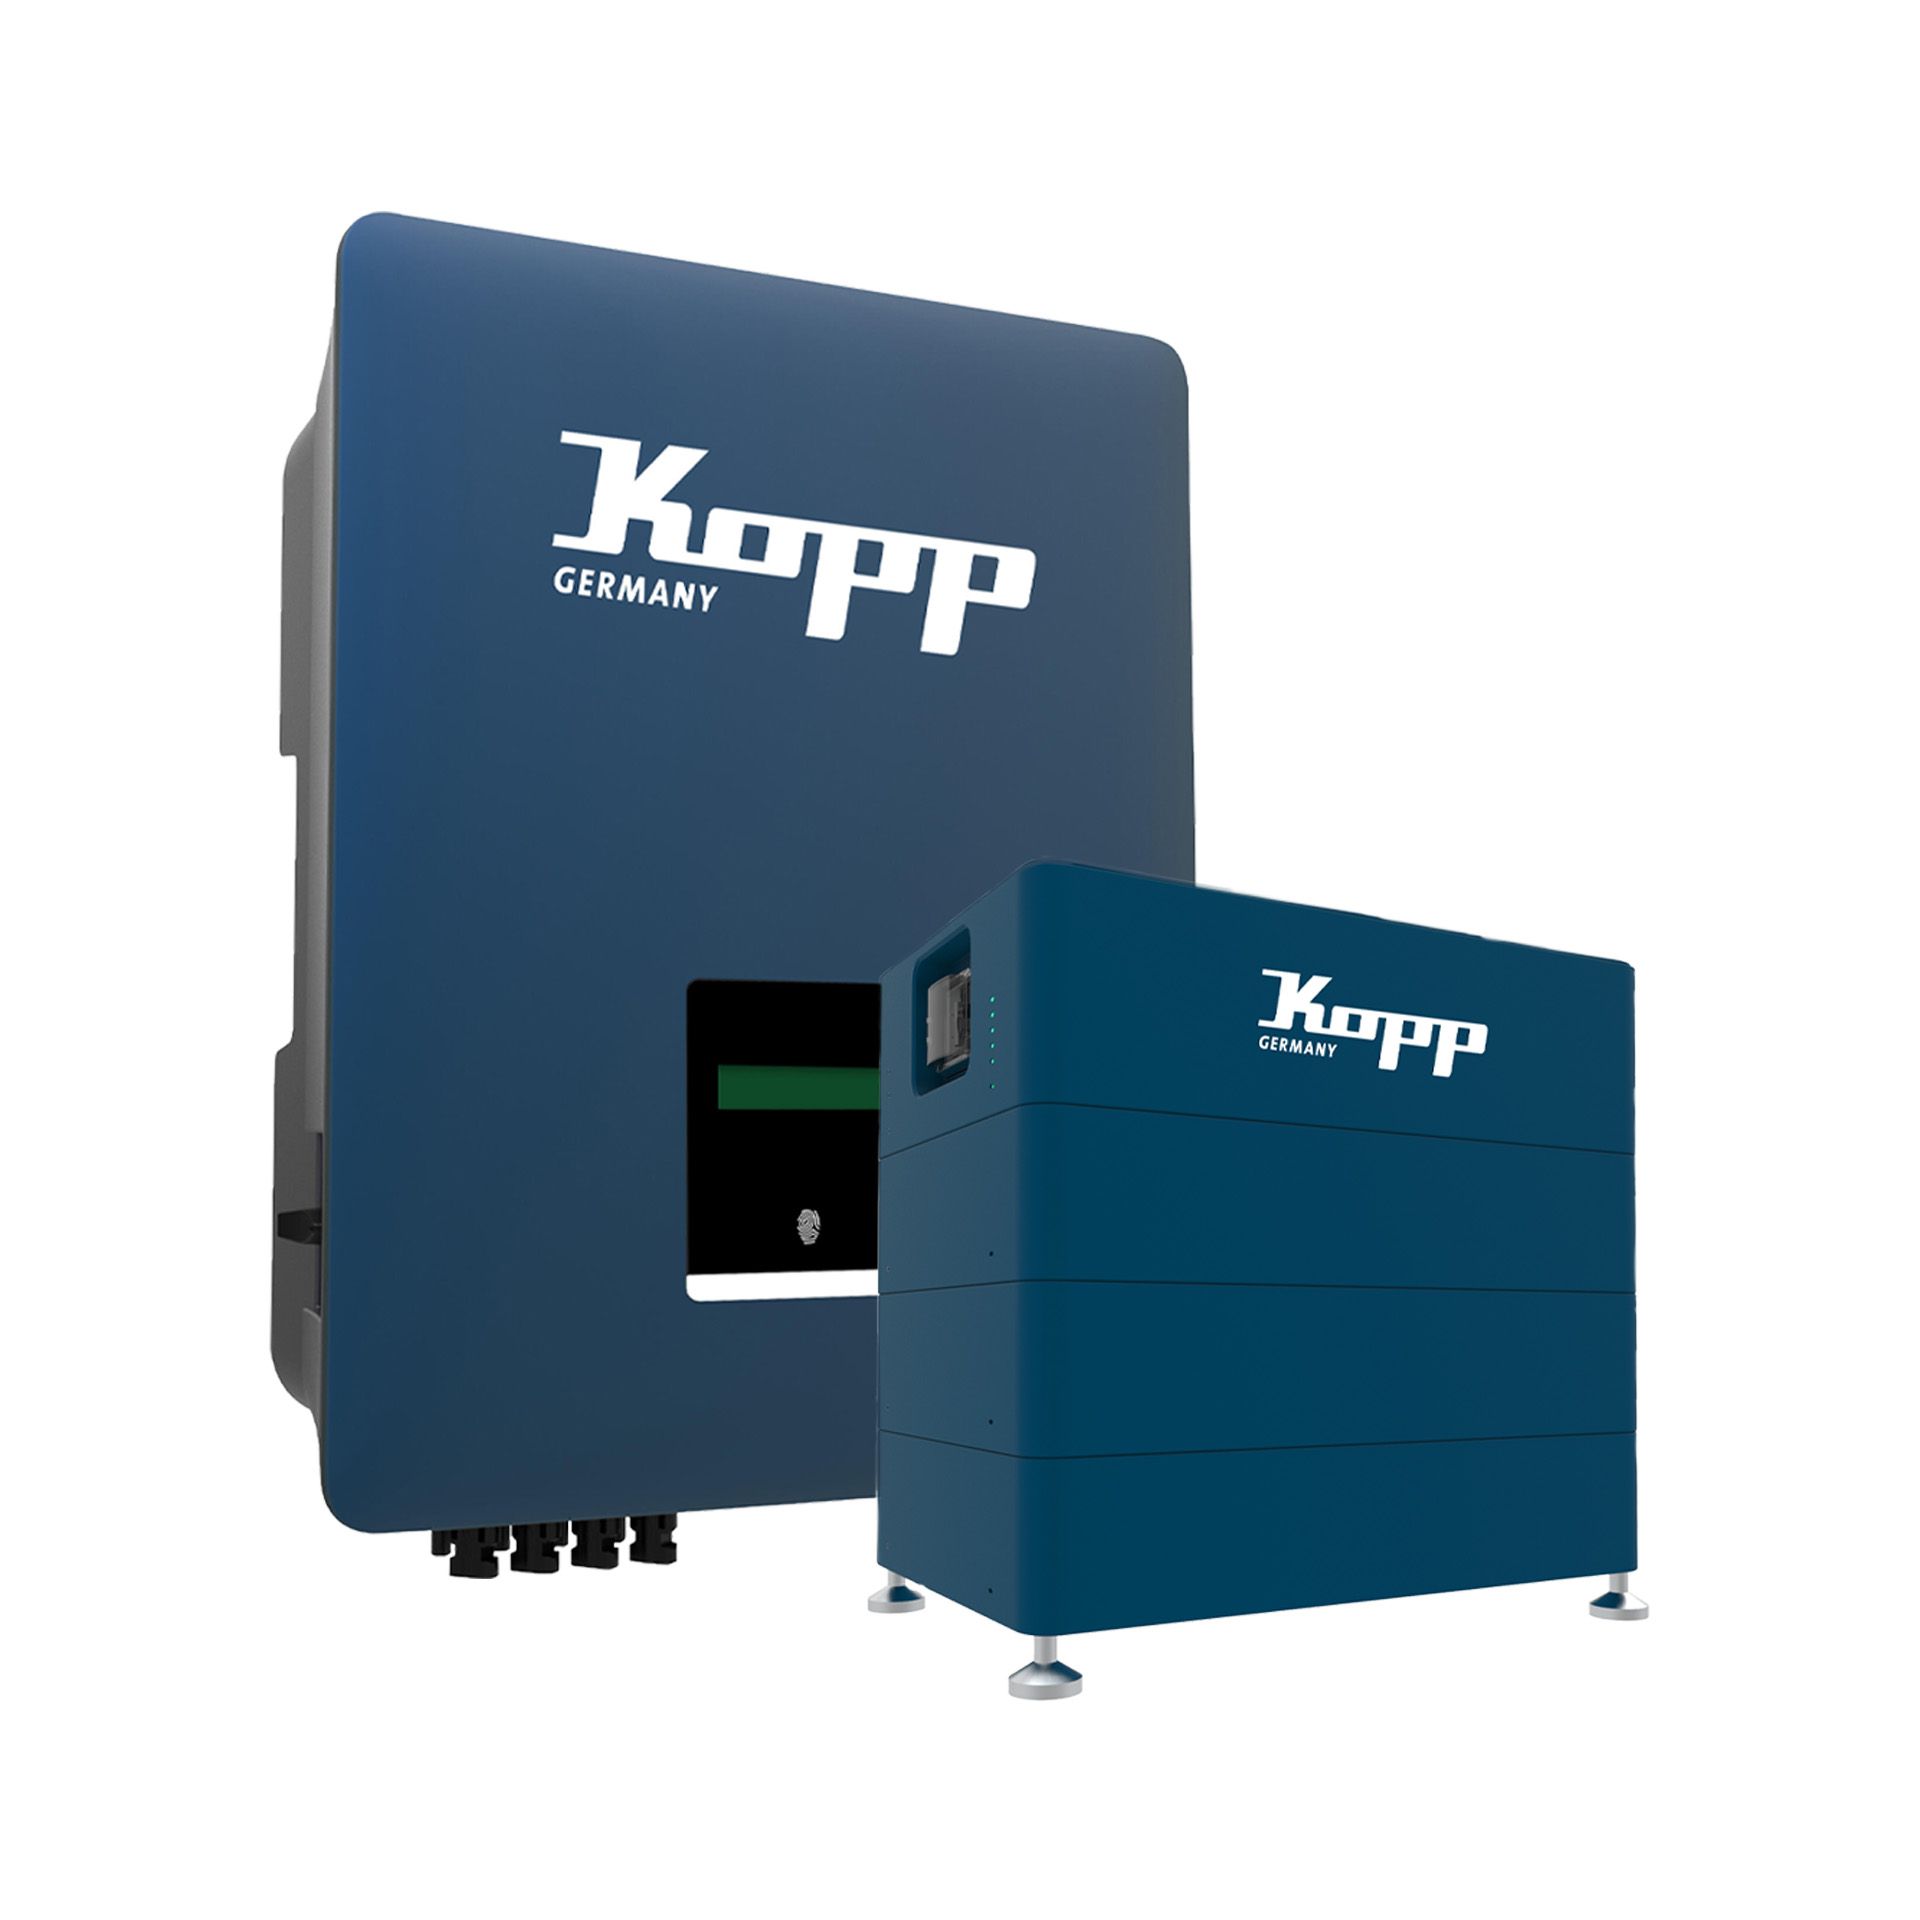 KOPP E24-PV-SET2-KK-10-11.6 PV-Paket Wechselrichter 10 kW + Speichersystem 11,6 kWh + Smartmeter (notstromfähig/blackstartfähig)